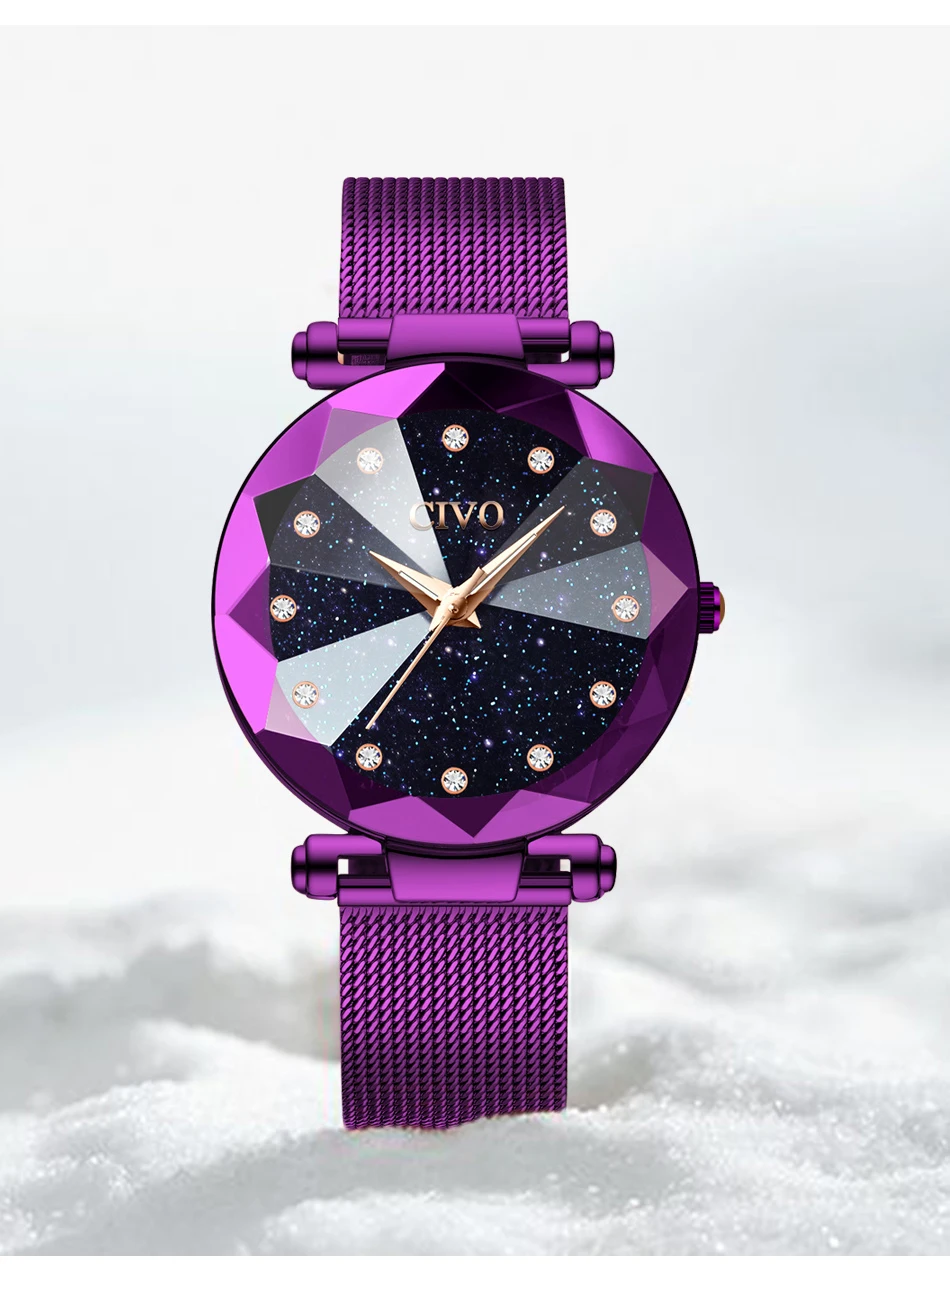 Чиво женские часы Фиолетовый кристалл Роскошные Водонепроницаемый Для женщин кварцевые часы Полный Сталь сетки Наручные часы Relogio Feminino